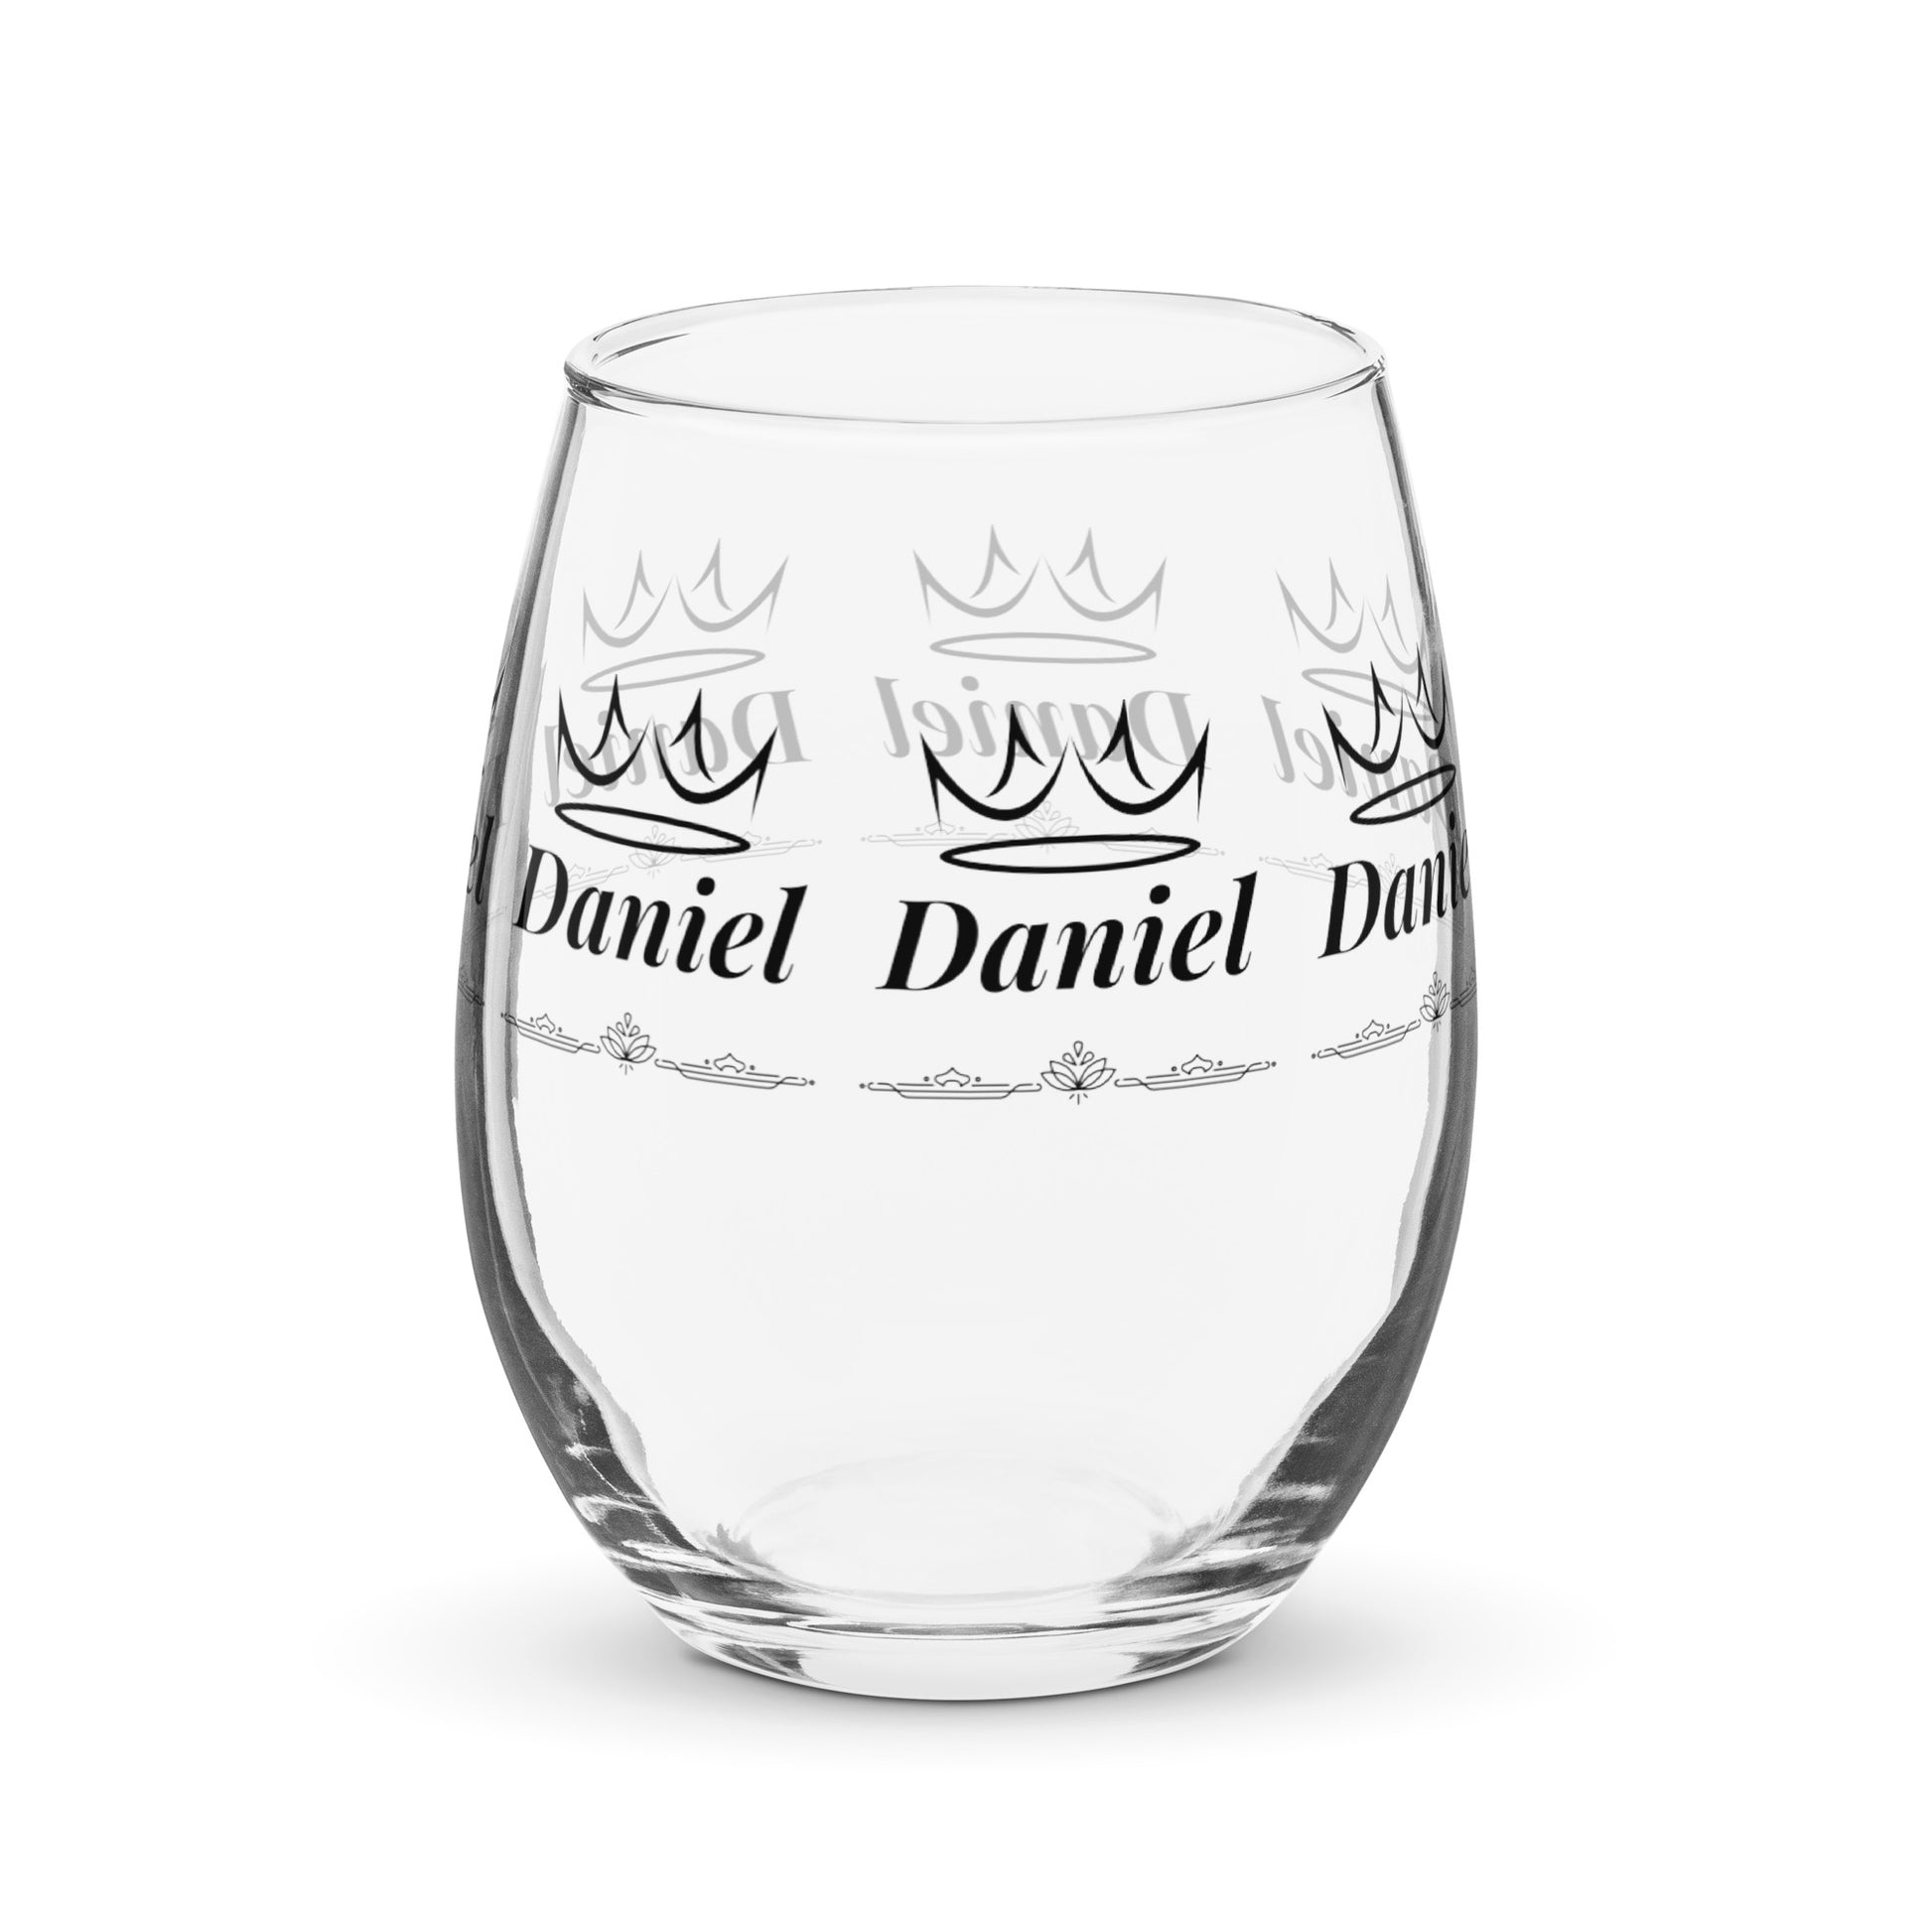 daniel name wine glass personalized wine glass wine glass